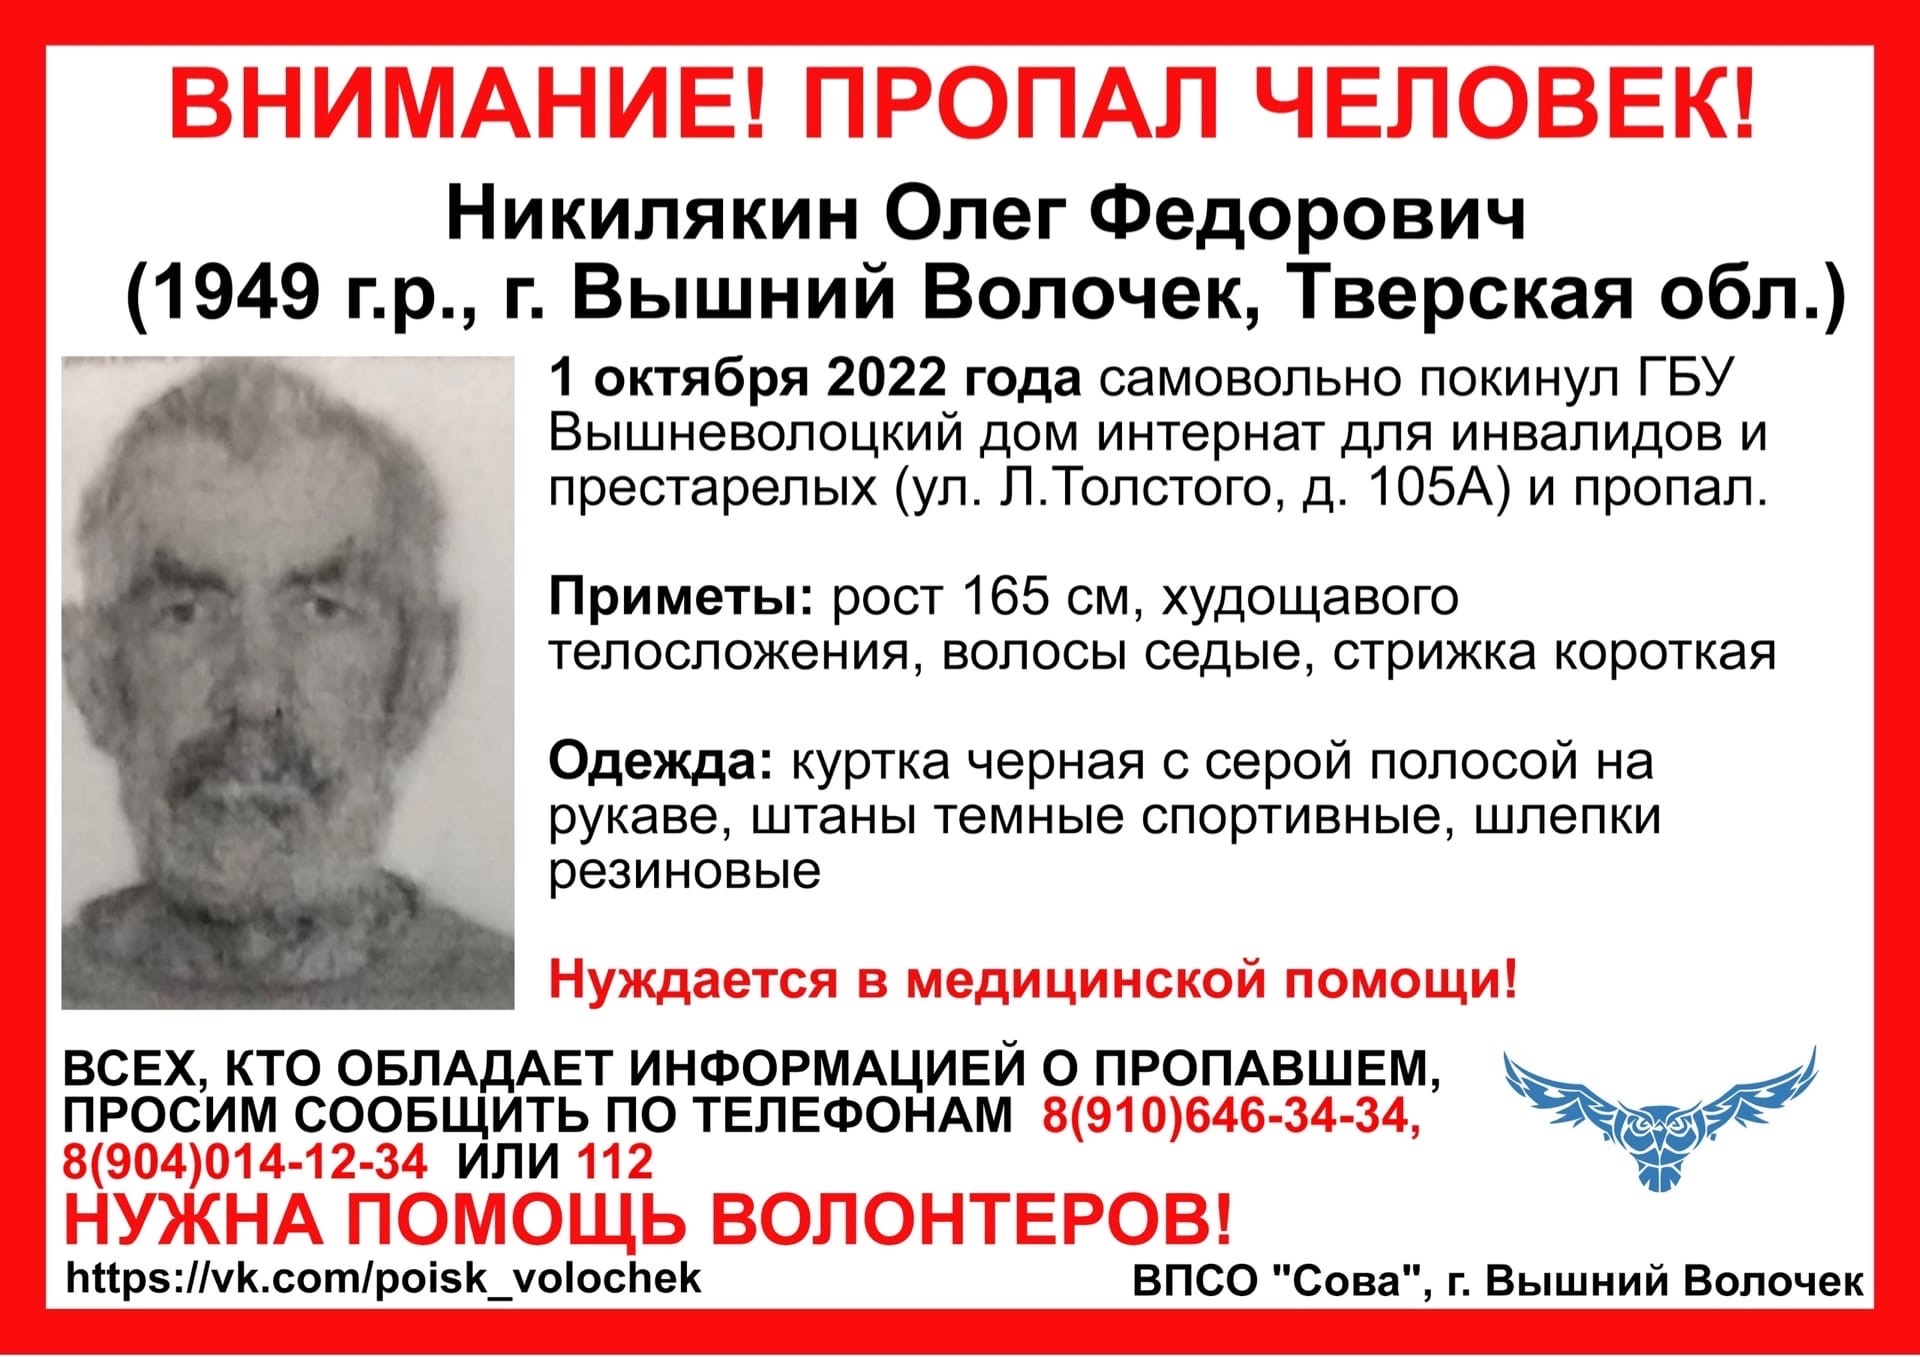 В Тверской области 73-летний пенсионер ушел из интернета для престарелых и пропал